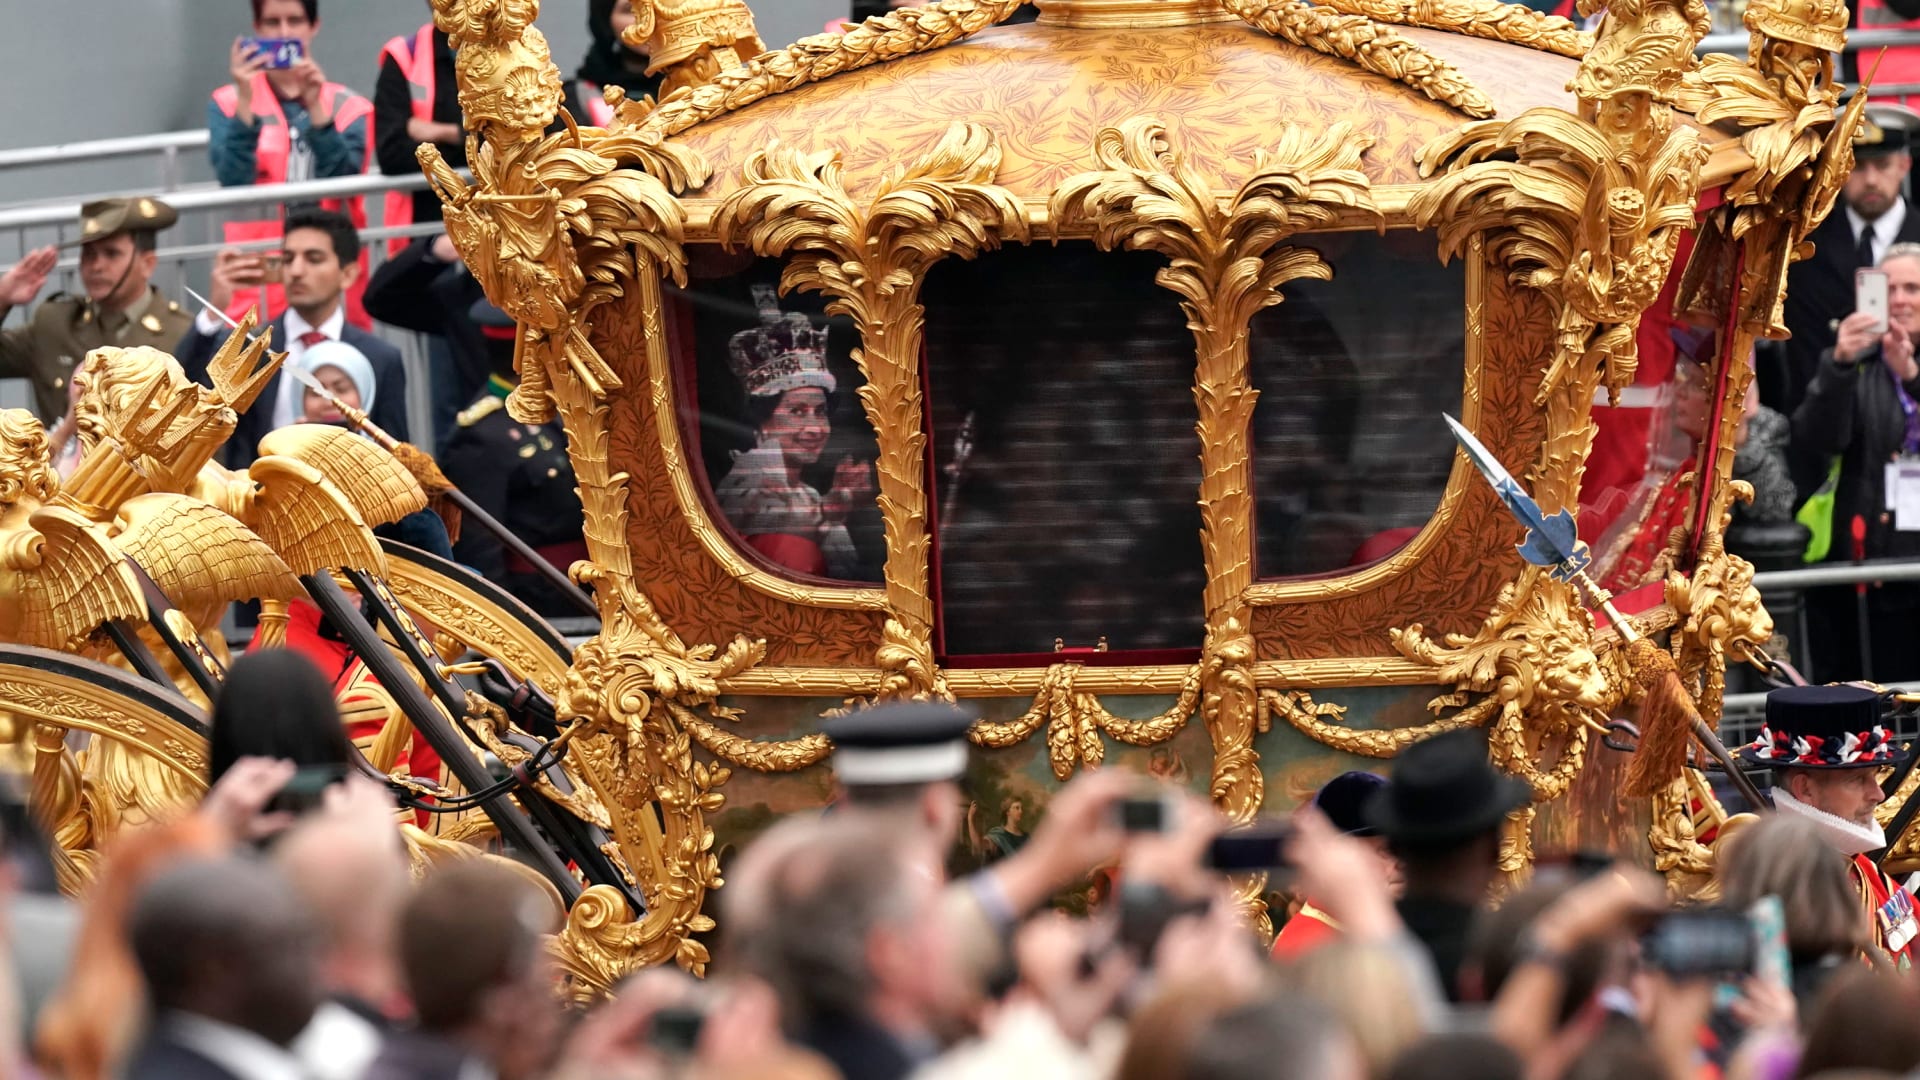 كأنها خرجت من قصة خيالية.. مركبة الملكة إليزابيث الذهبية تظهر في احتفالات اليوبيل البلاتيني